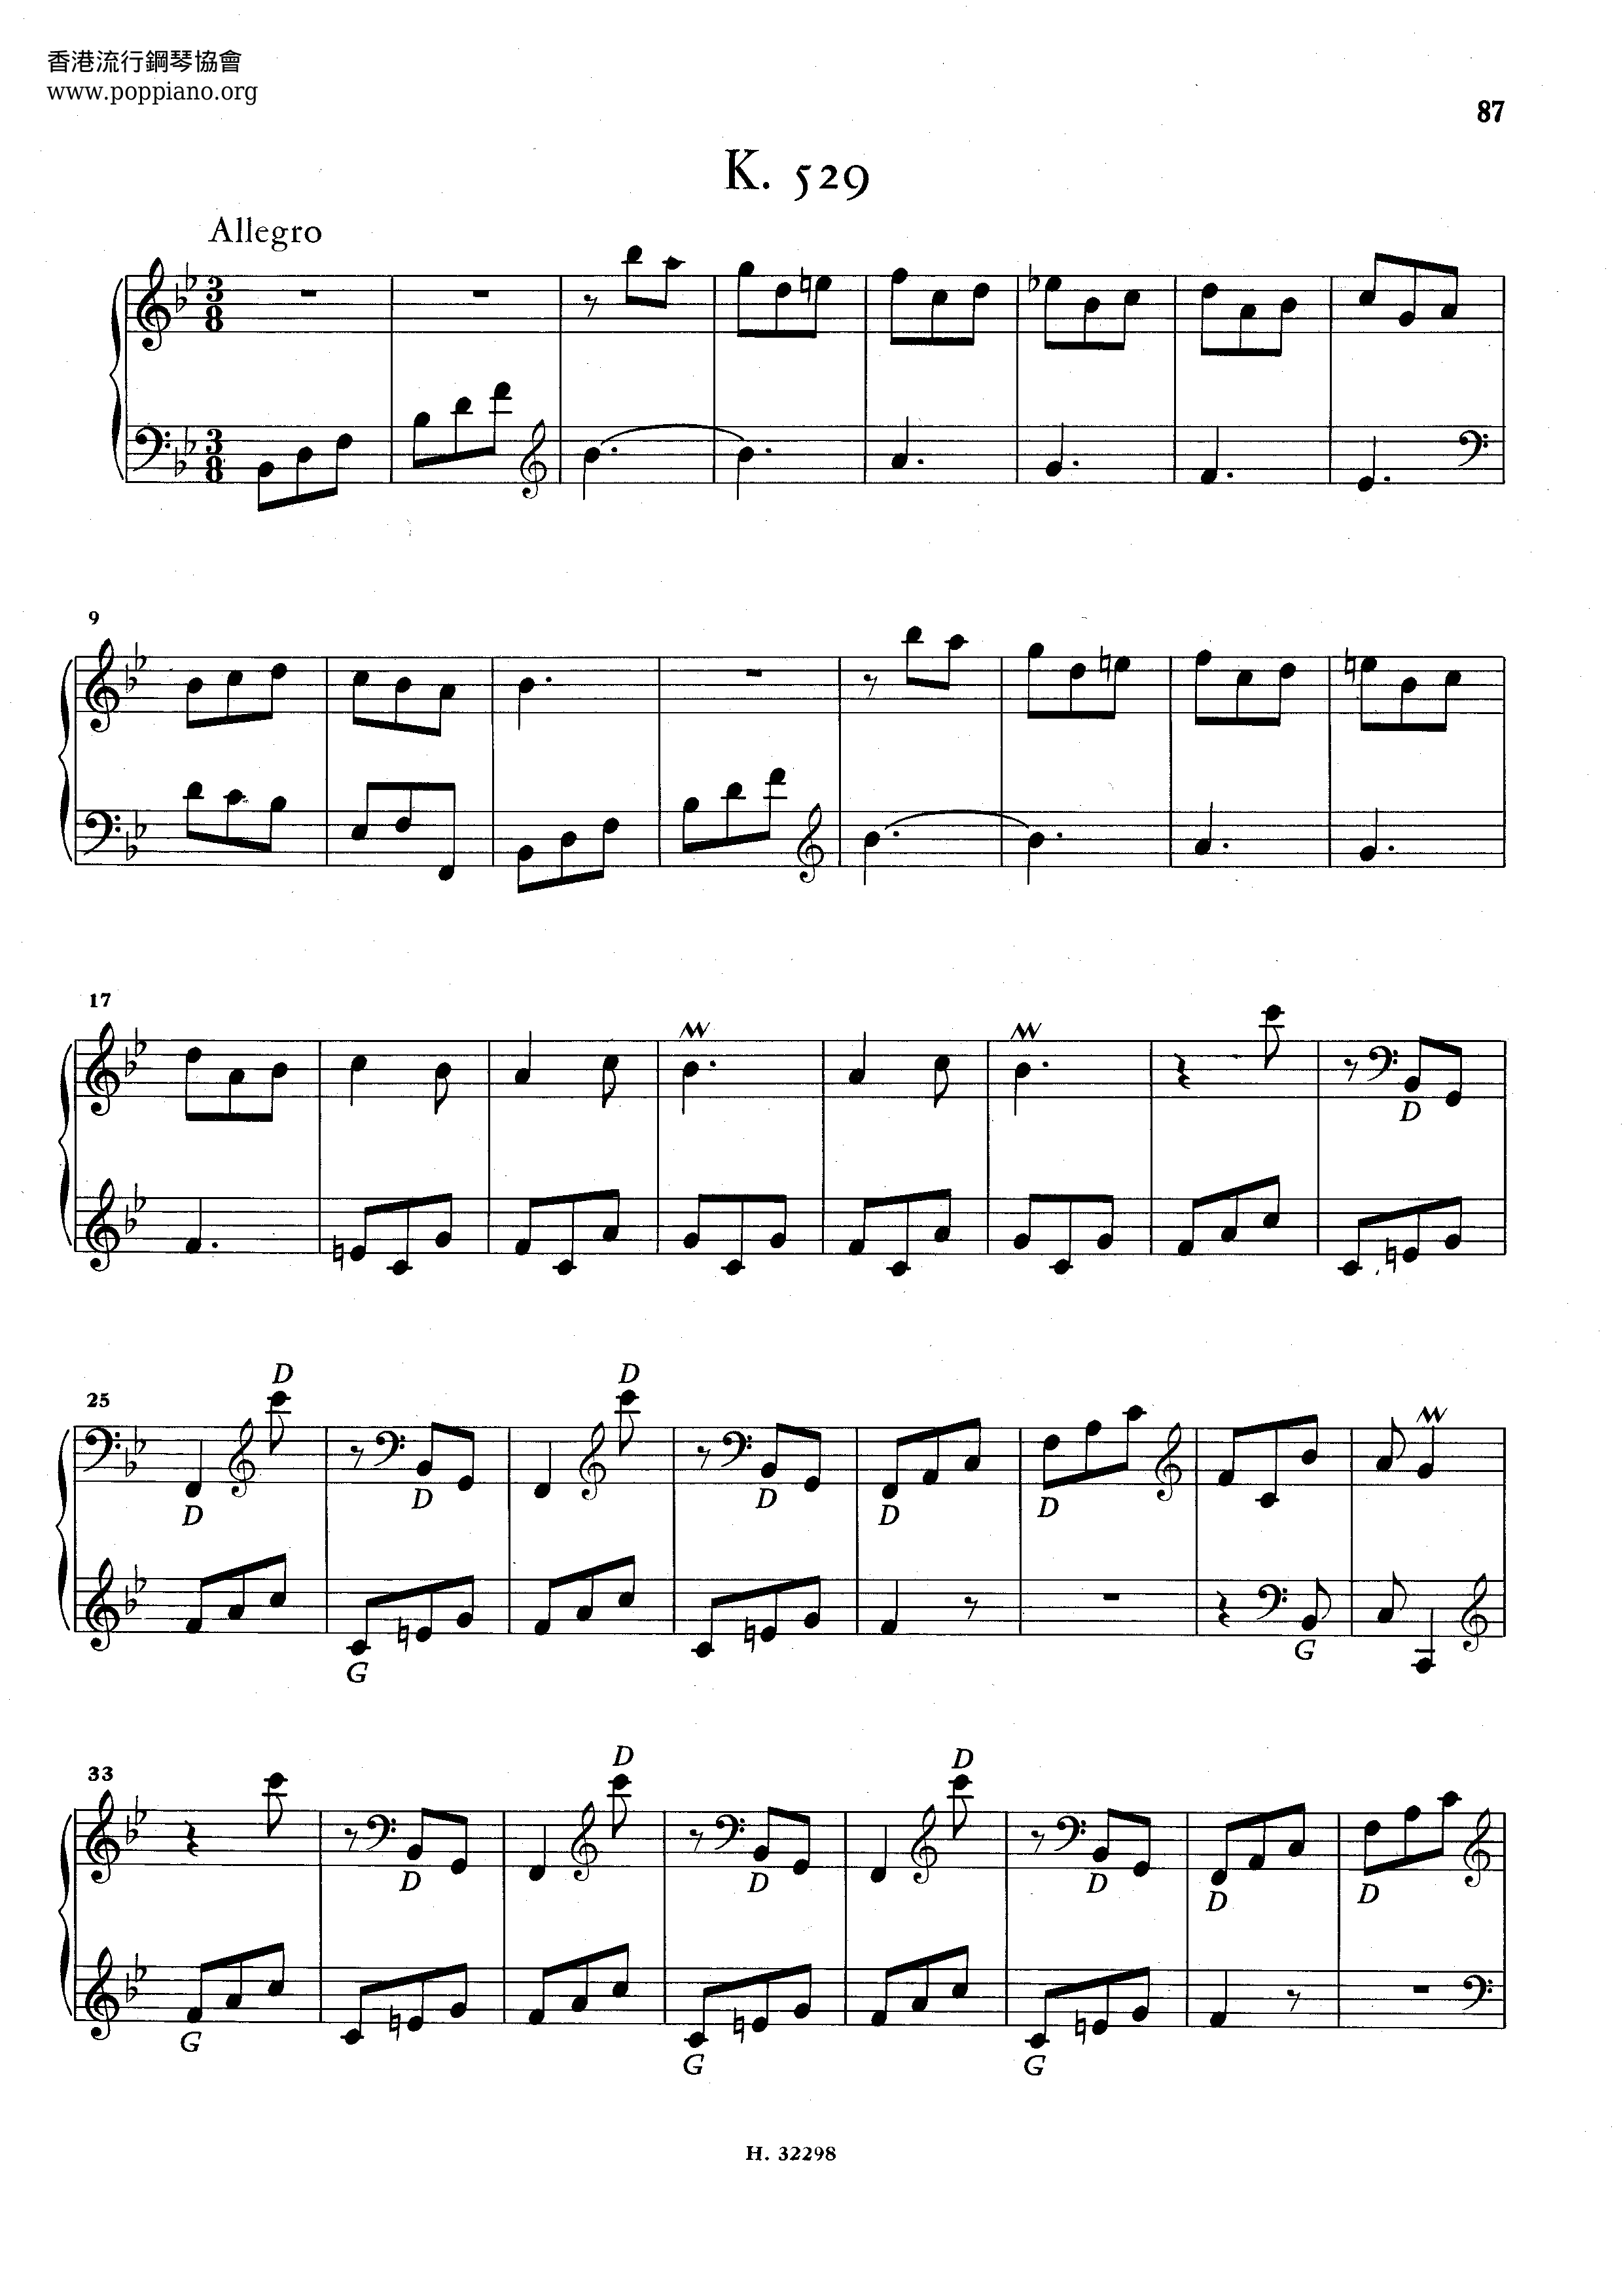 Scarlatti Piano Sonata K.529 Score